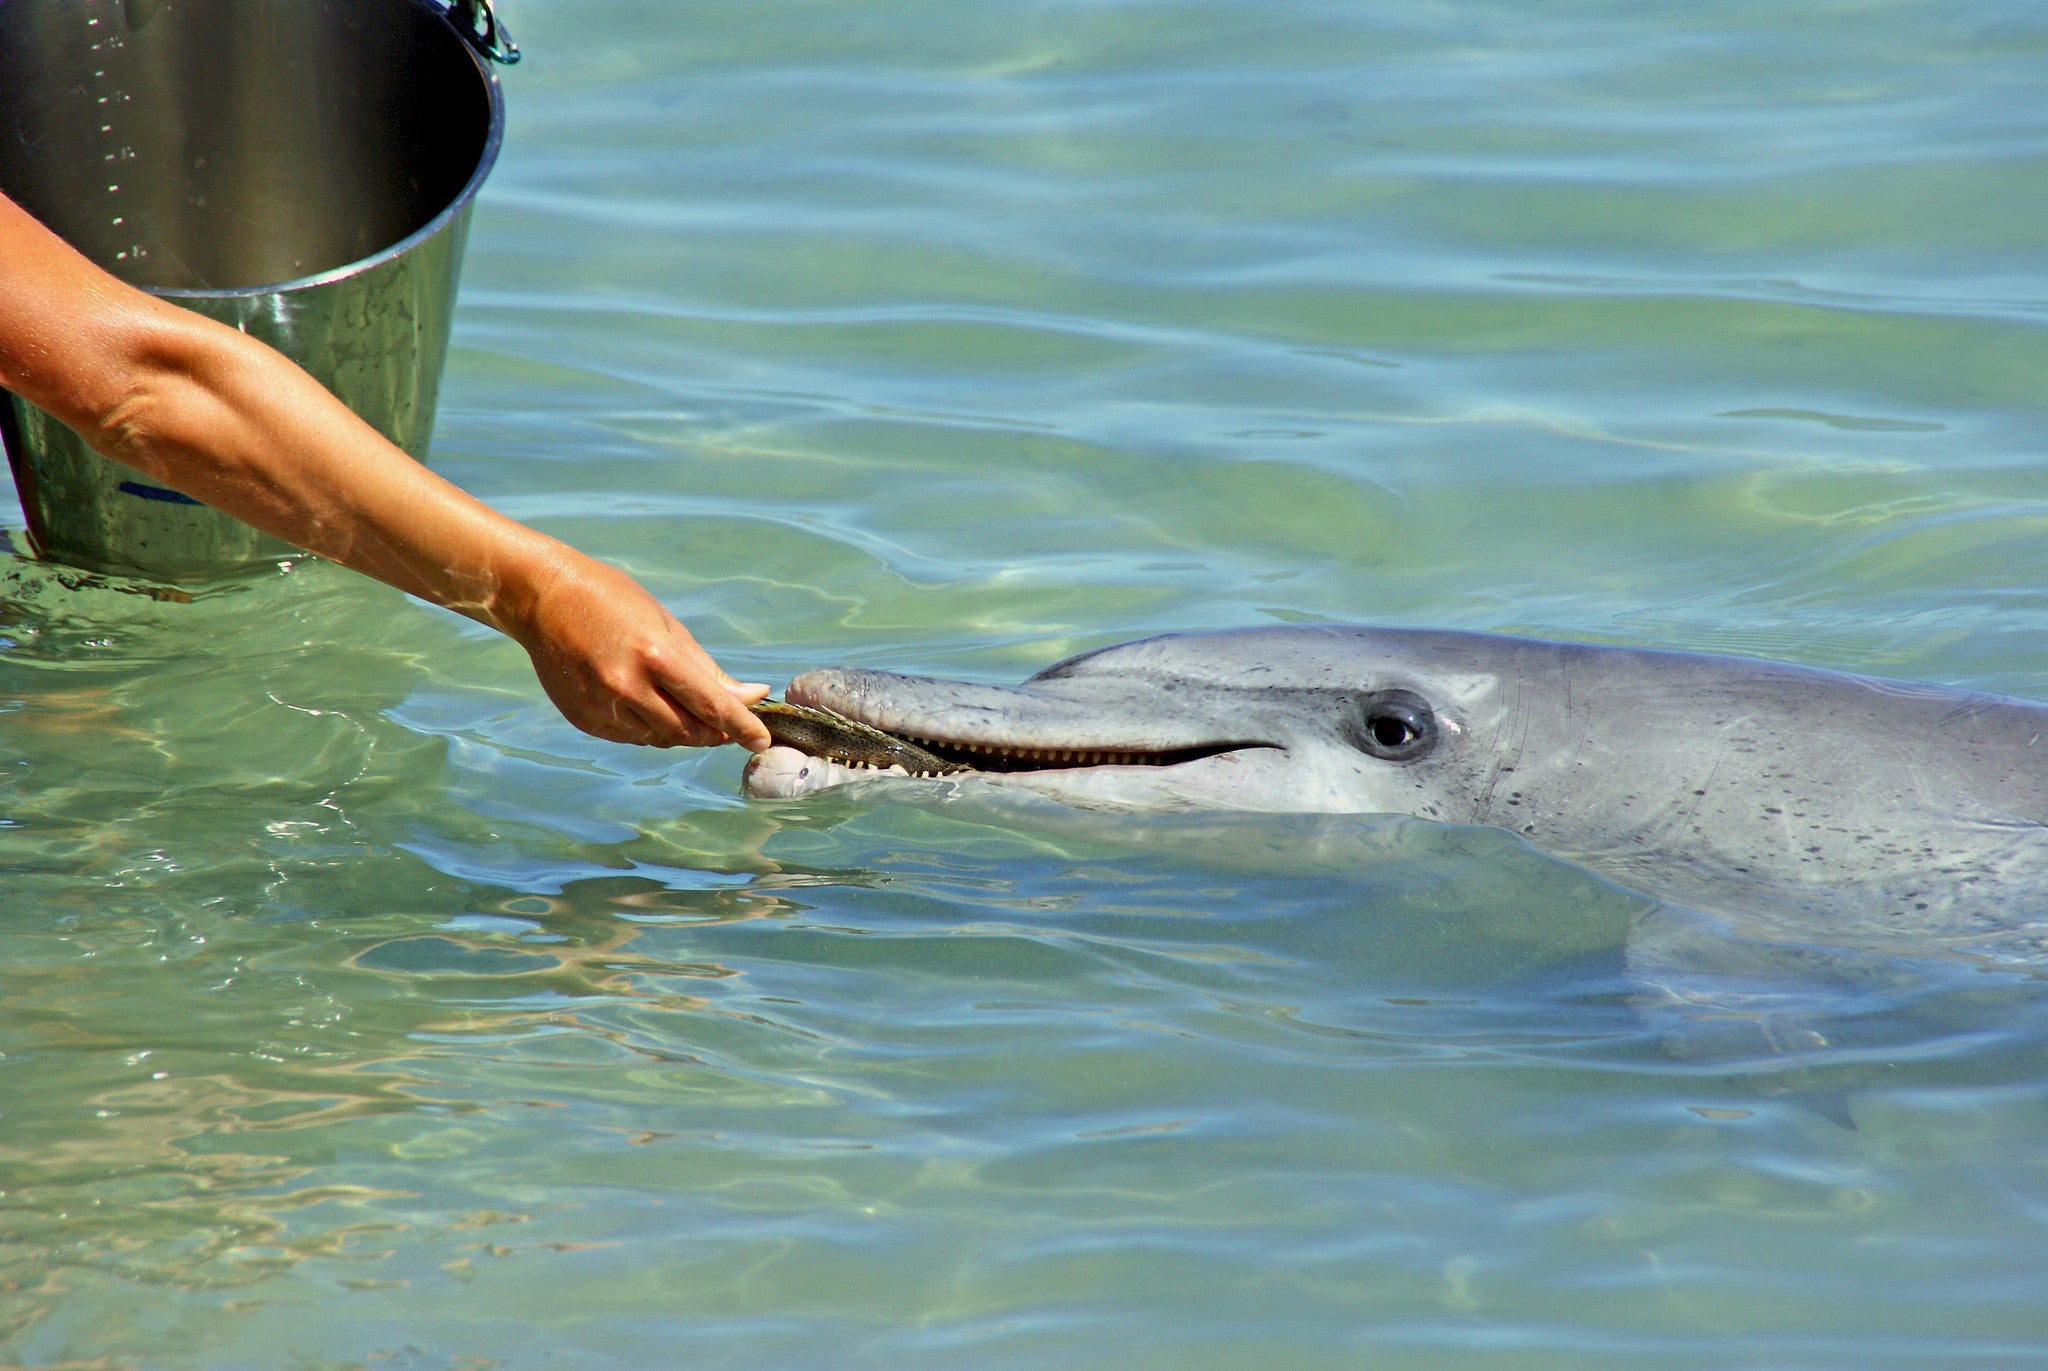 Monkey Mia dolphin feeding iland co